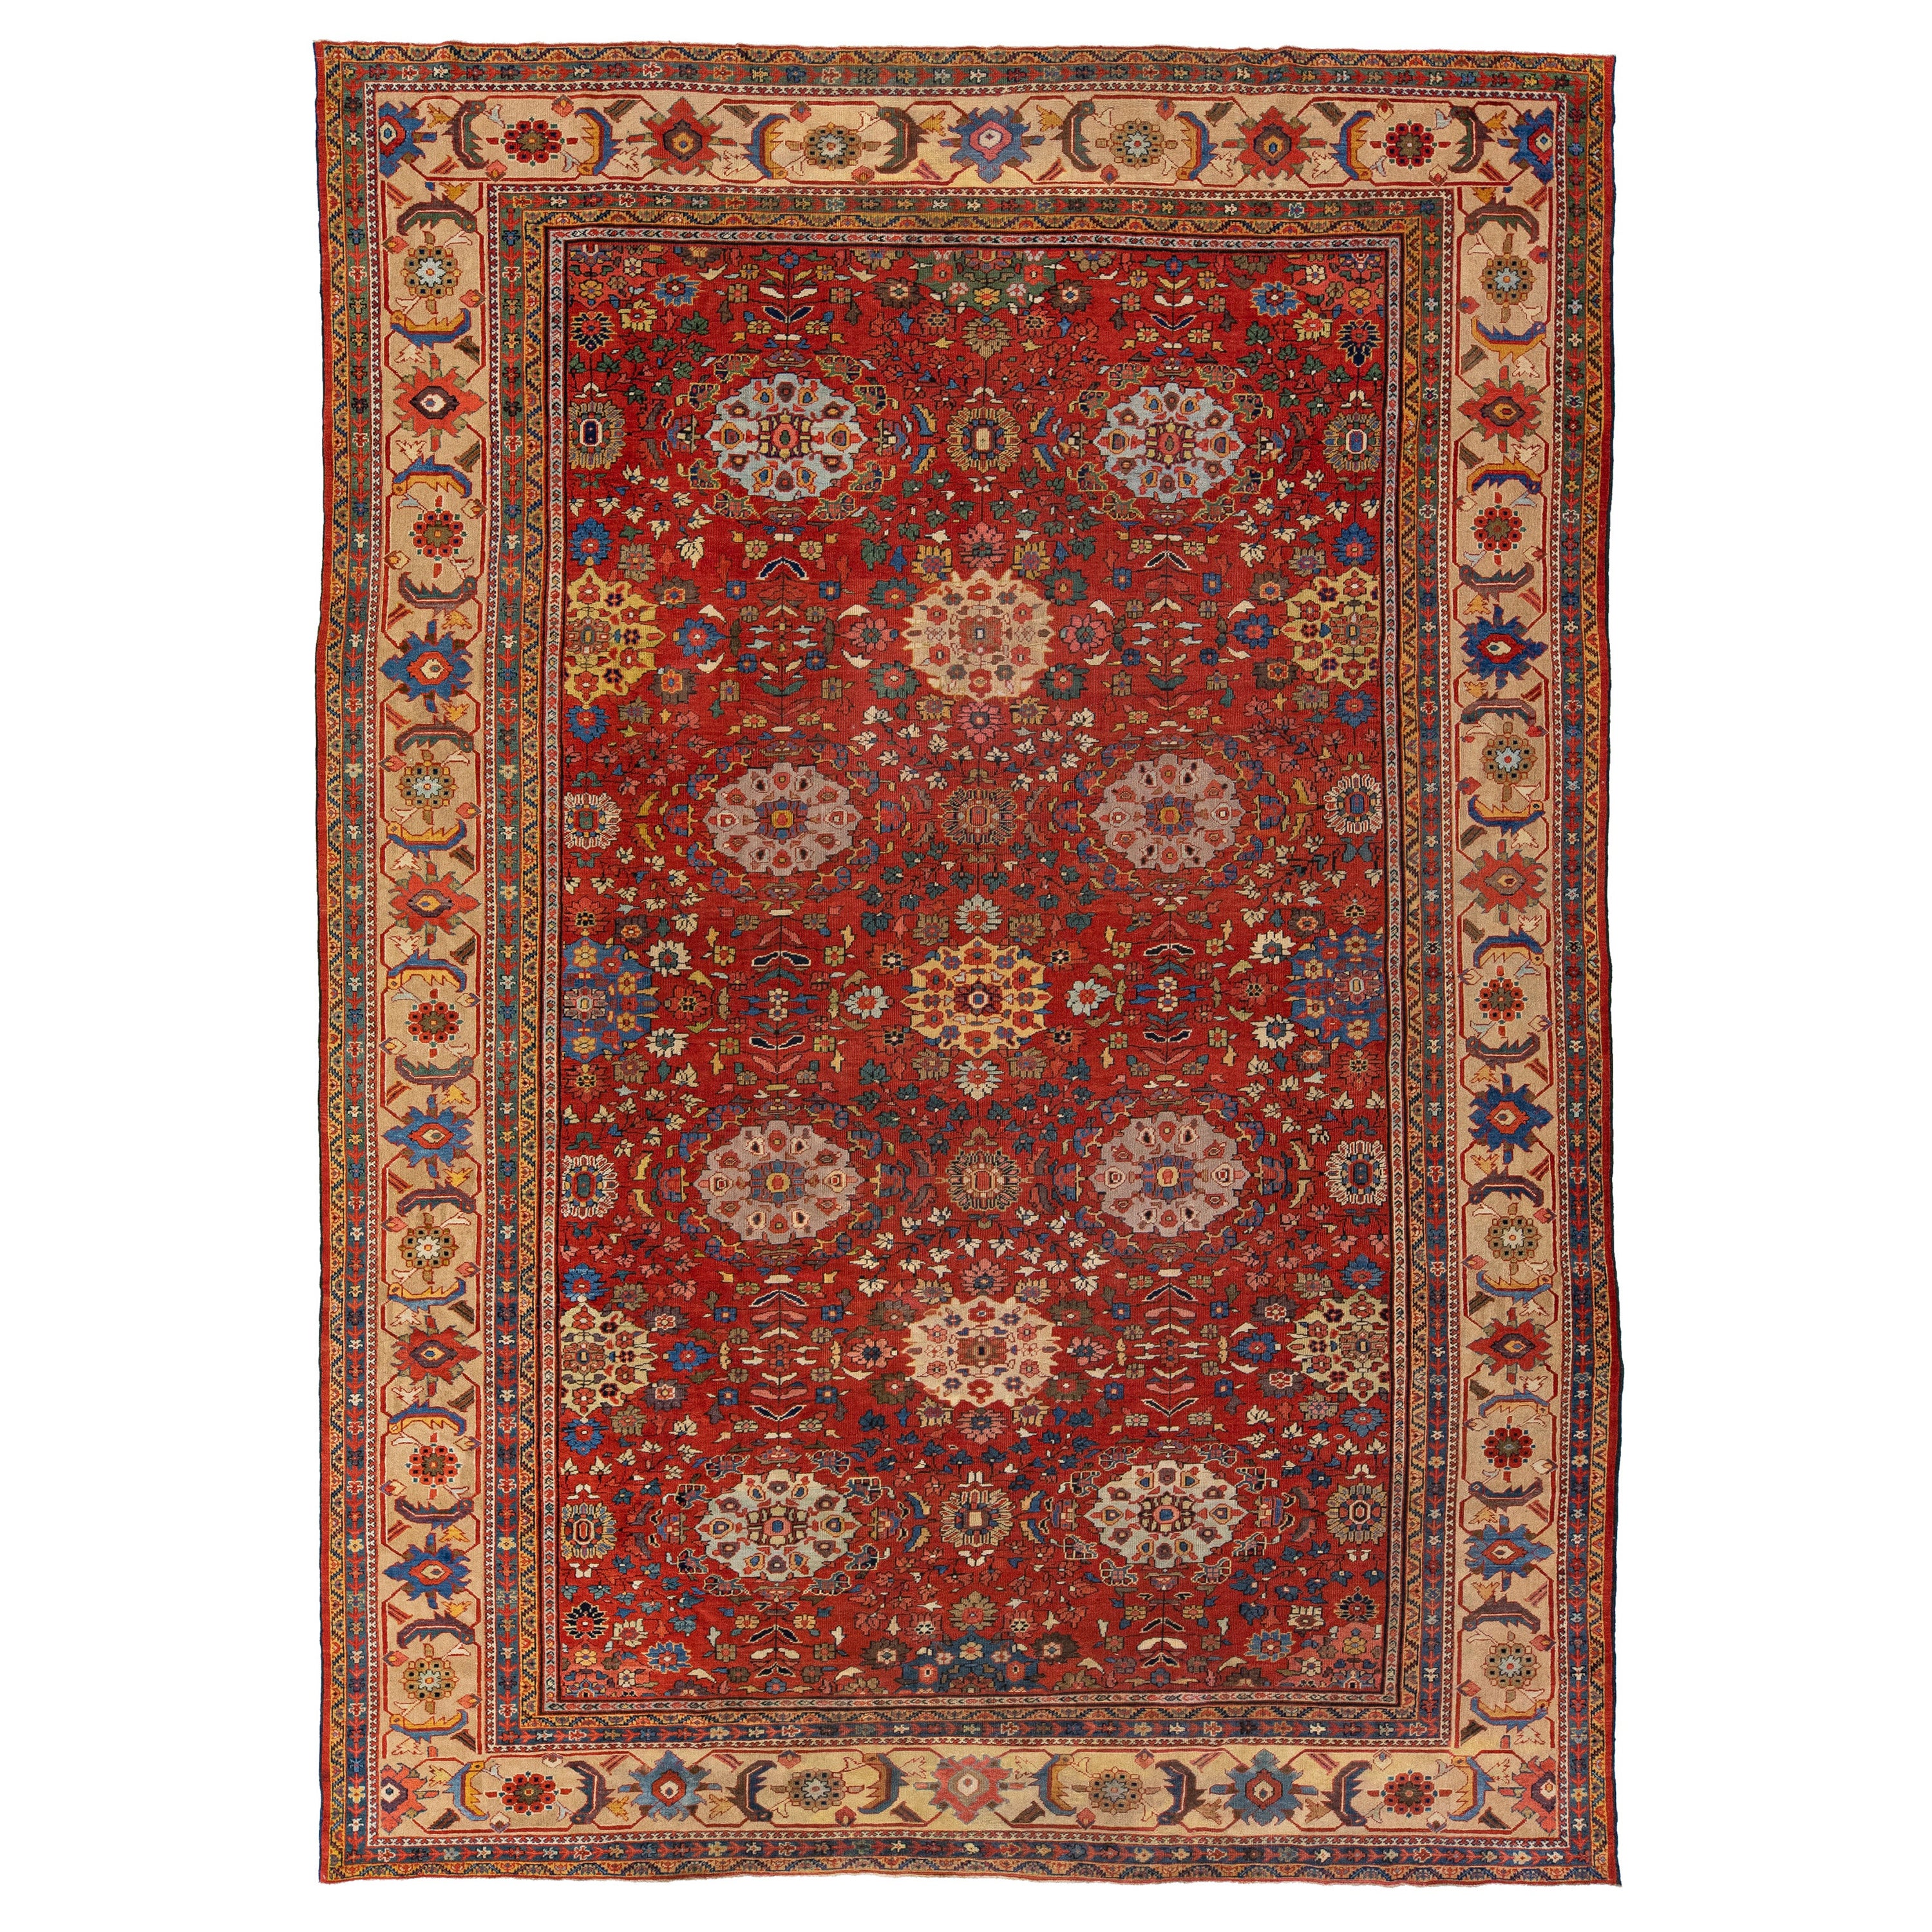 Roter antiker handgefertigter Sultanabad-Teppich aus persischer Wolle mit Allover-Motiv